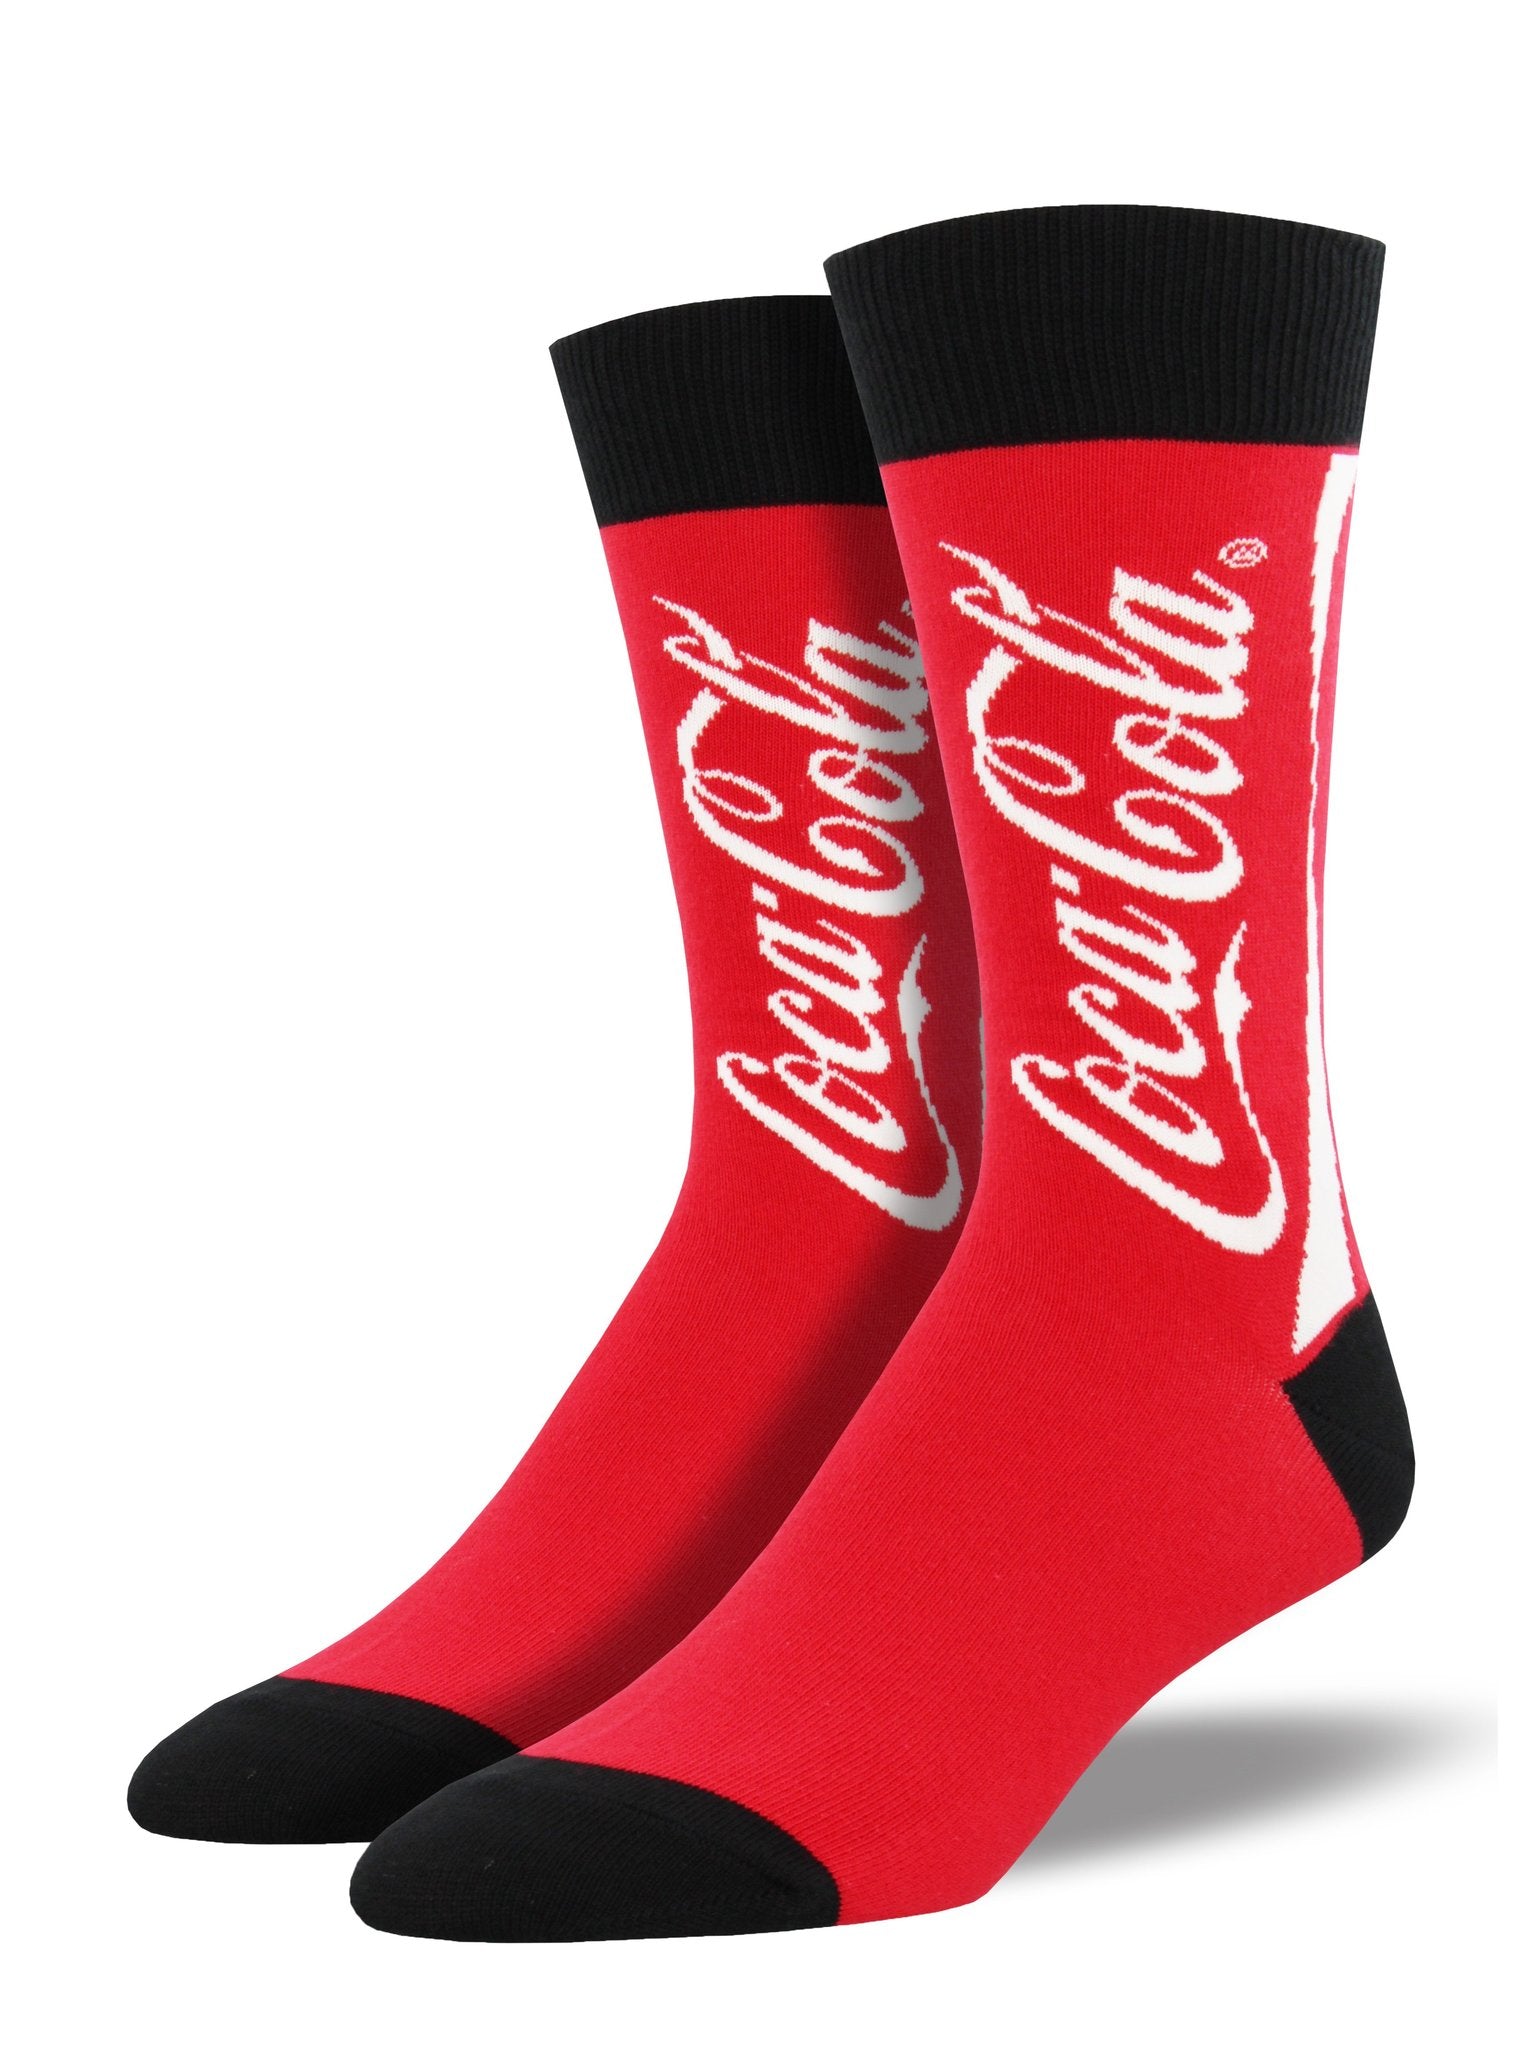 Socksmith Men's "Coca-Cola" Crew Socks